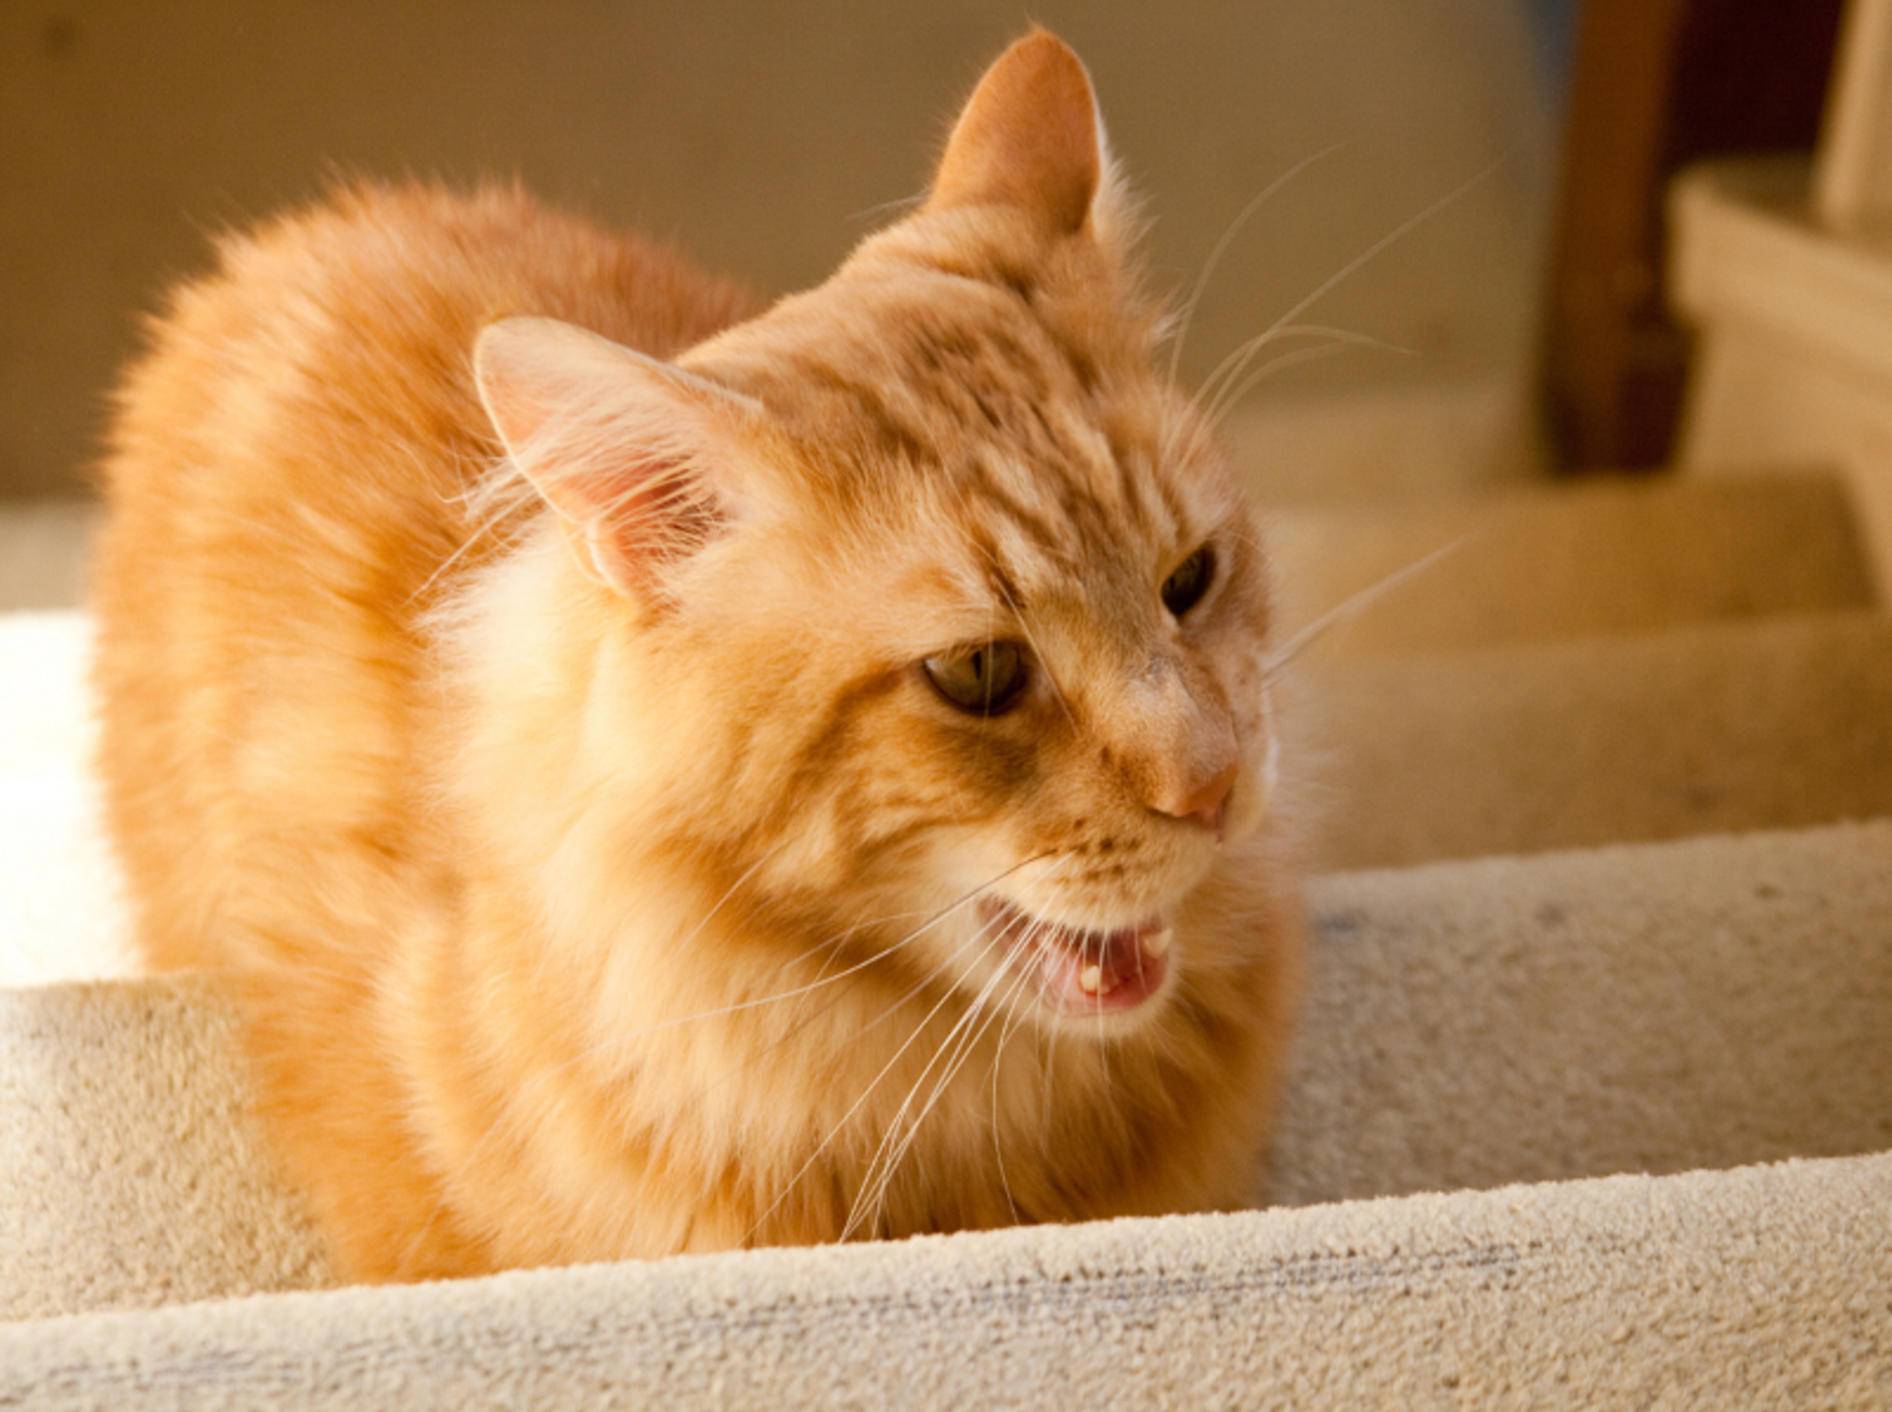 Katzen lieben Treppen mit Teppich besonders – Shutterstock / TalyaPhoto